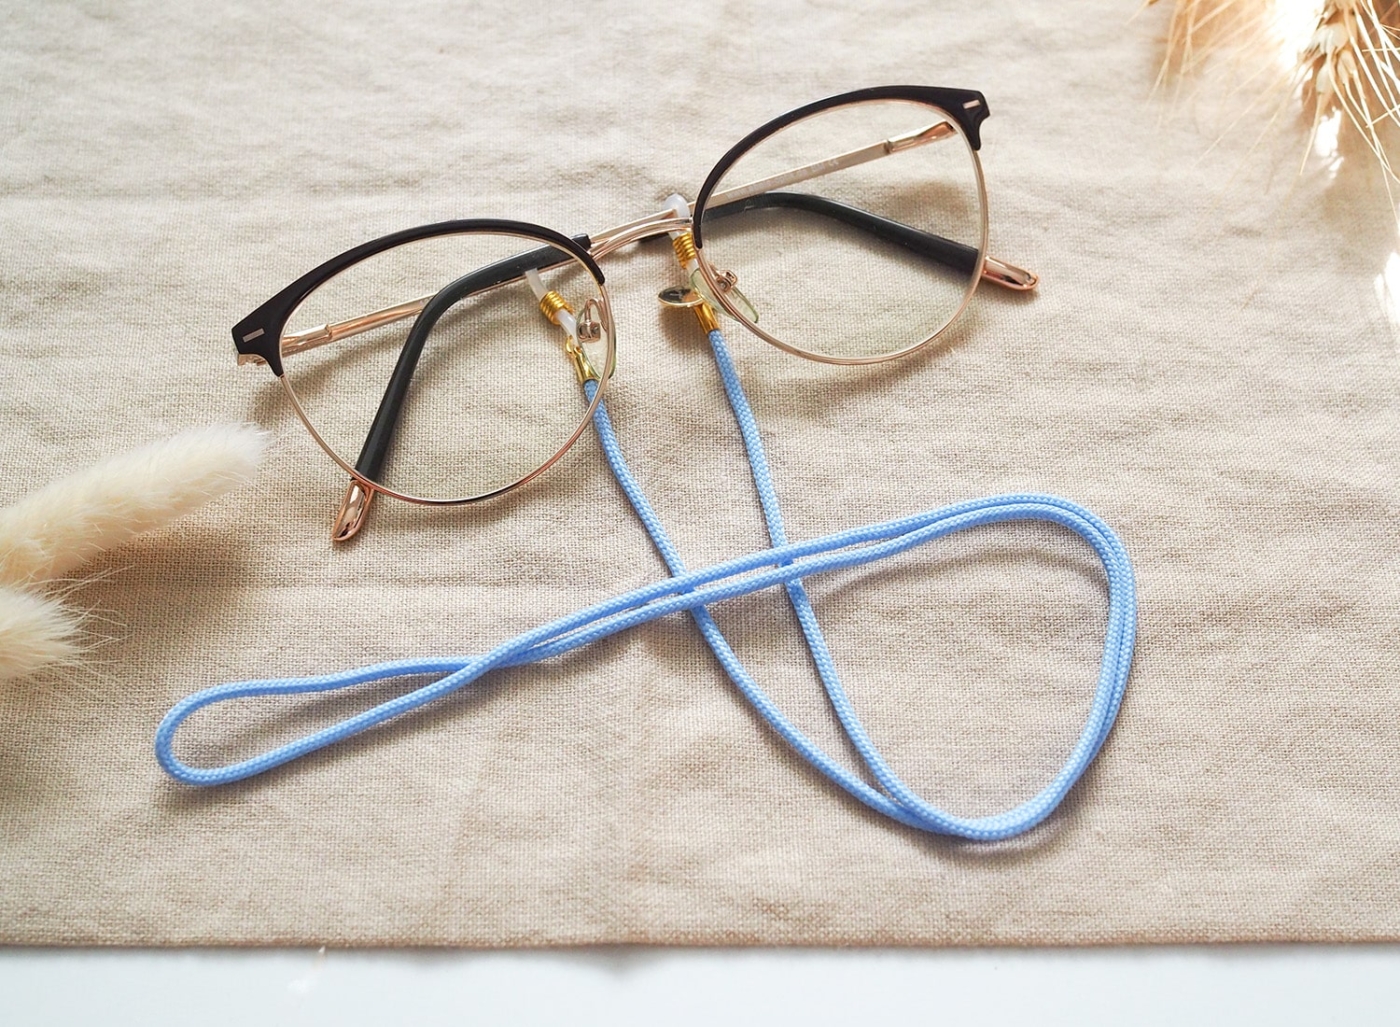 Brillenband in hellblau und goldenen Details an Brille.